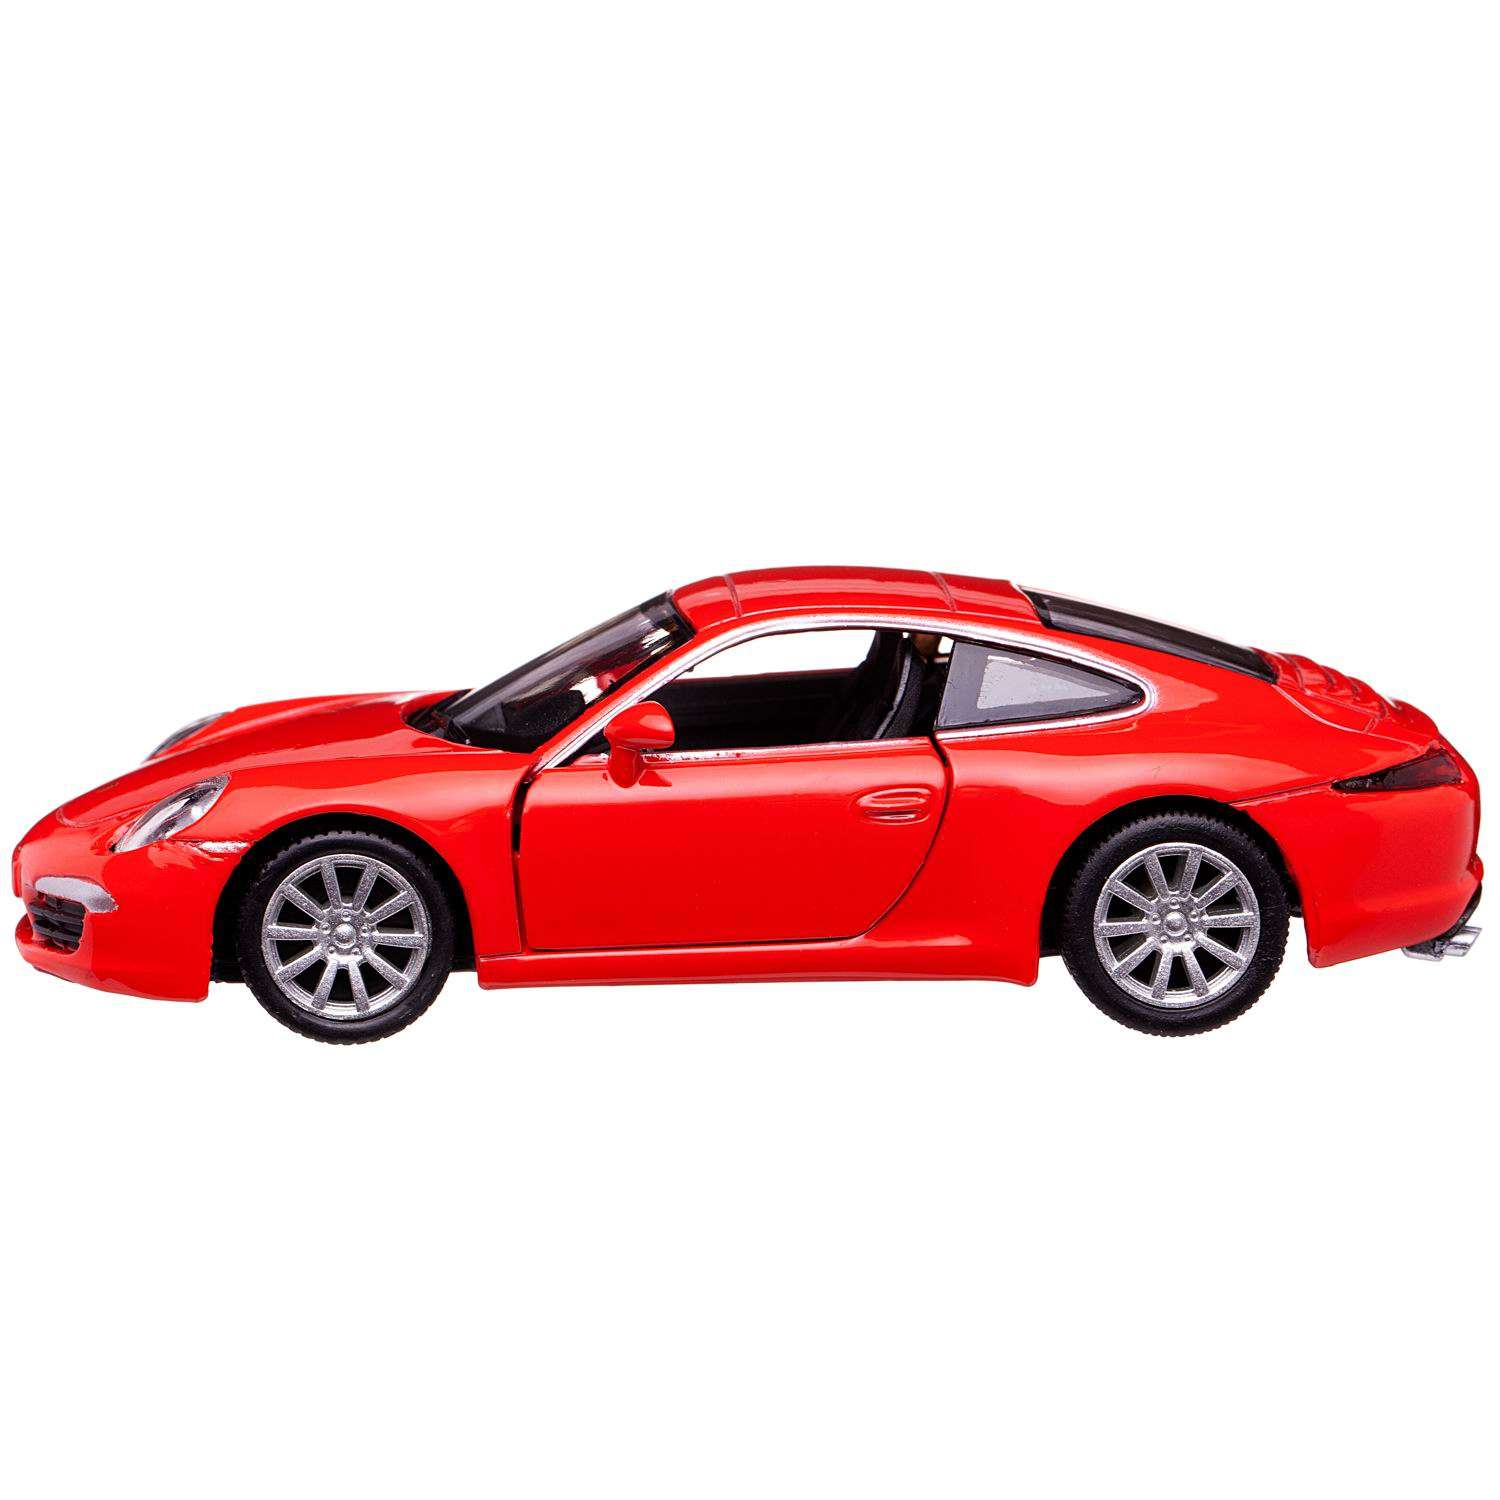 Машина металлическая Uni-Fortune Porsche 911 Carrea S красный цвет двери открываются 554010-RD - фото 1